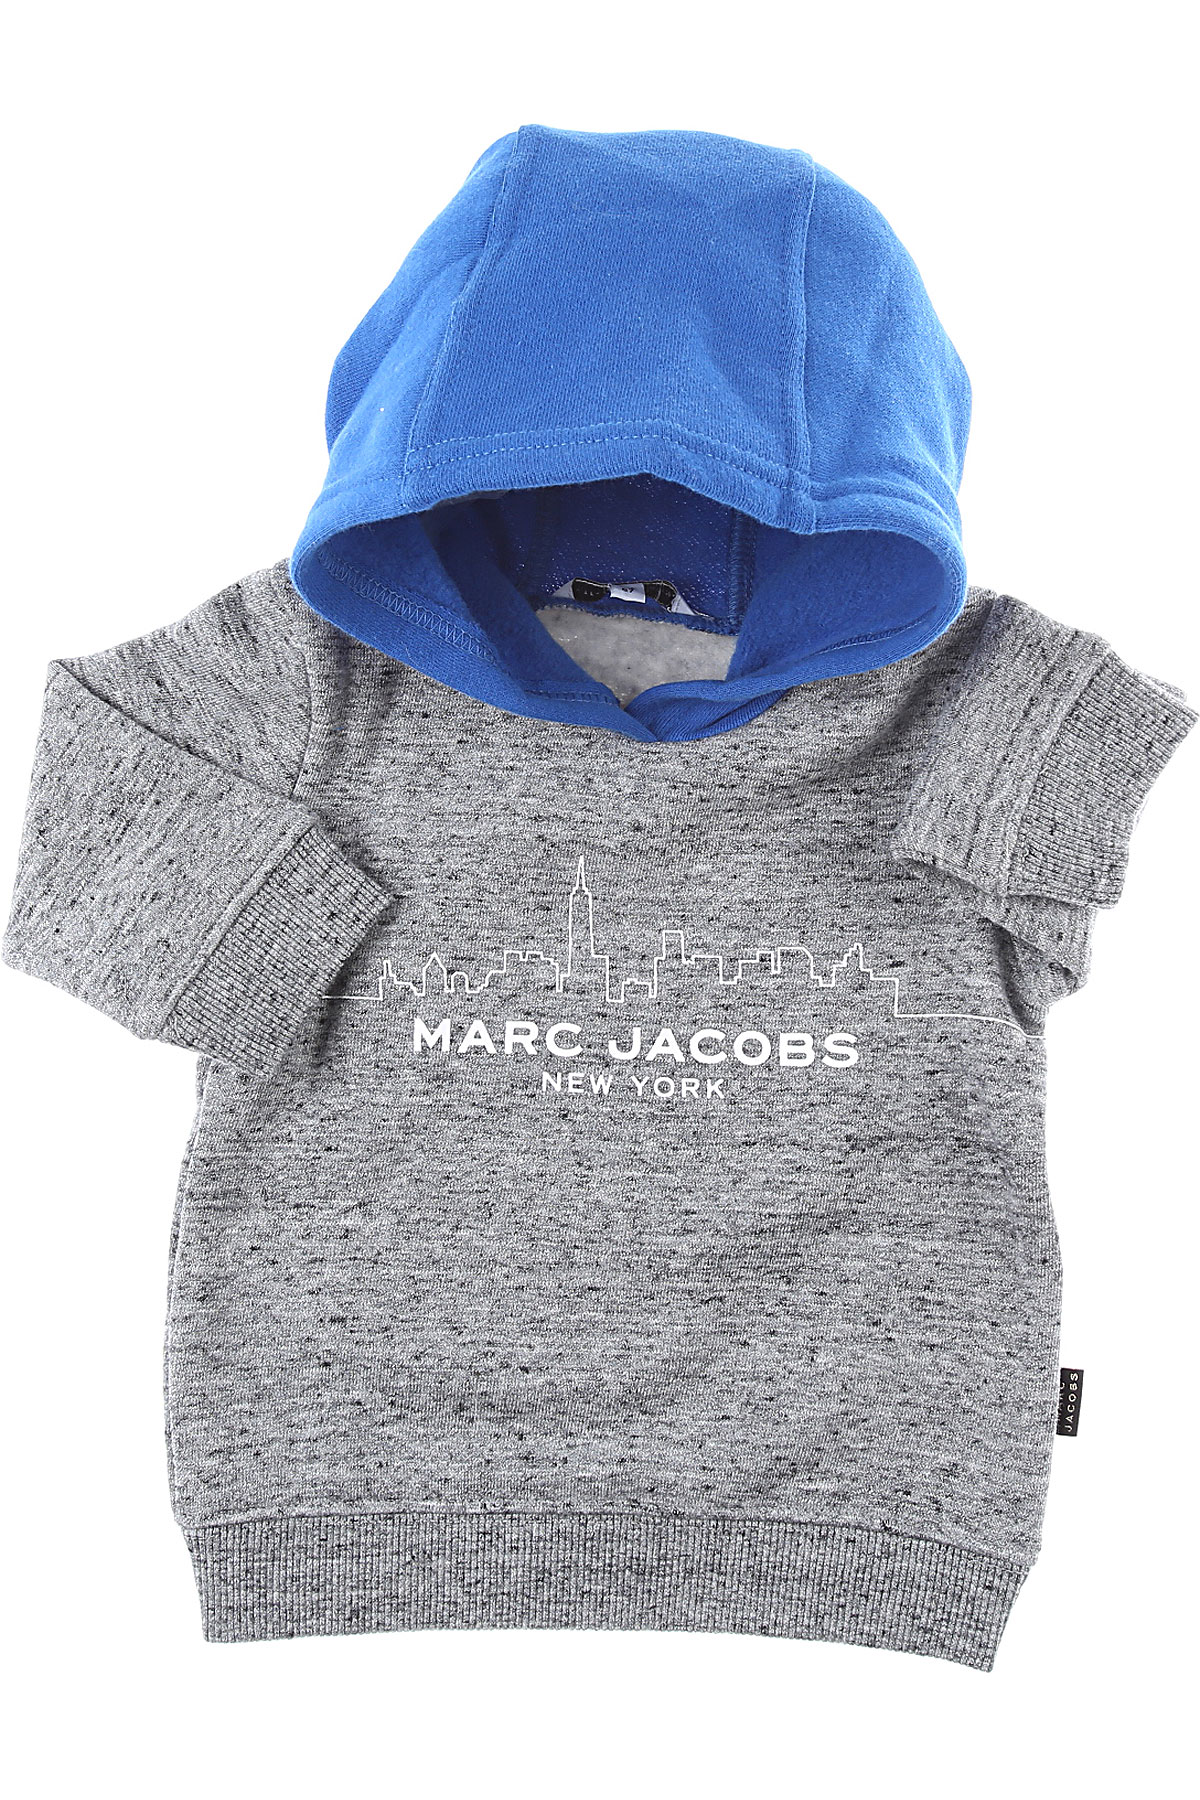 Marc Jacobs Baby Sweatshirt & Kapuzenpullover für Jungen Günstig im Sale, Grau, Baumwolle, 2017, 18M 2Y 3Y 6M 9M